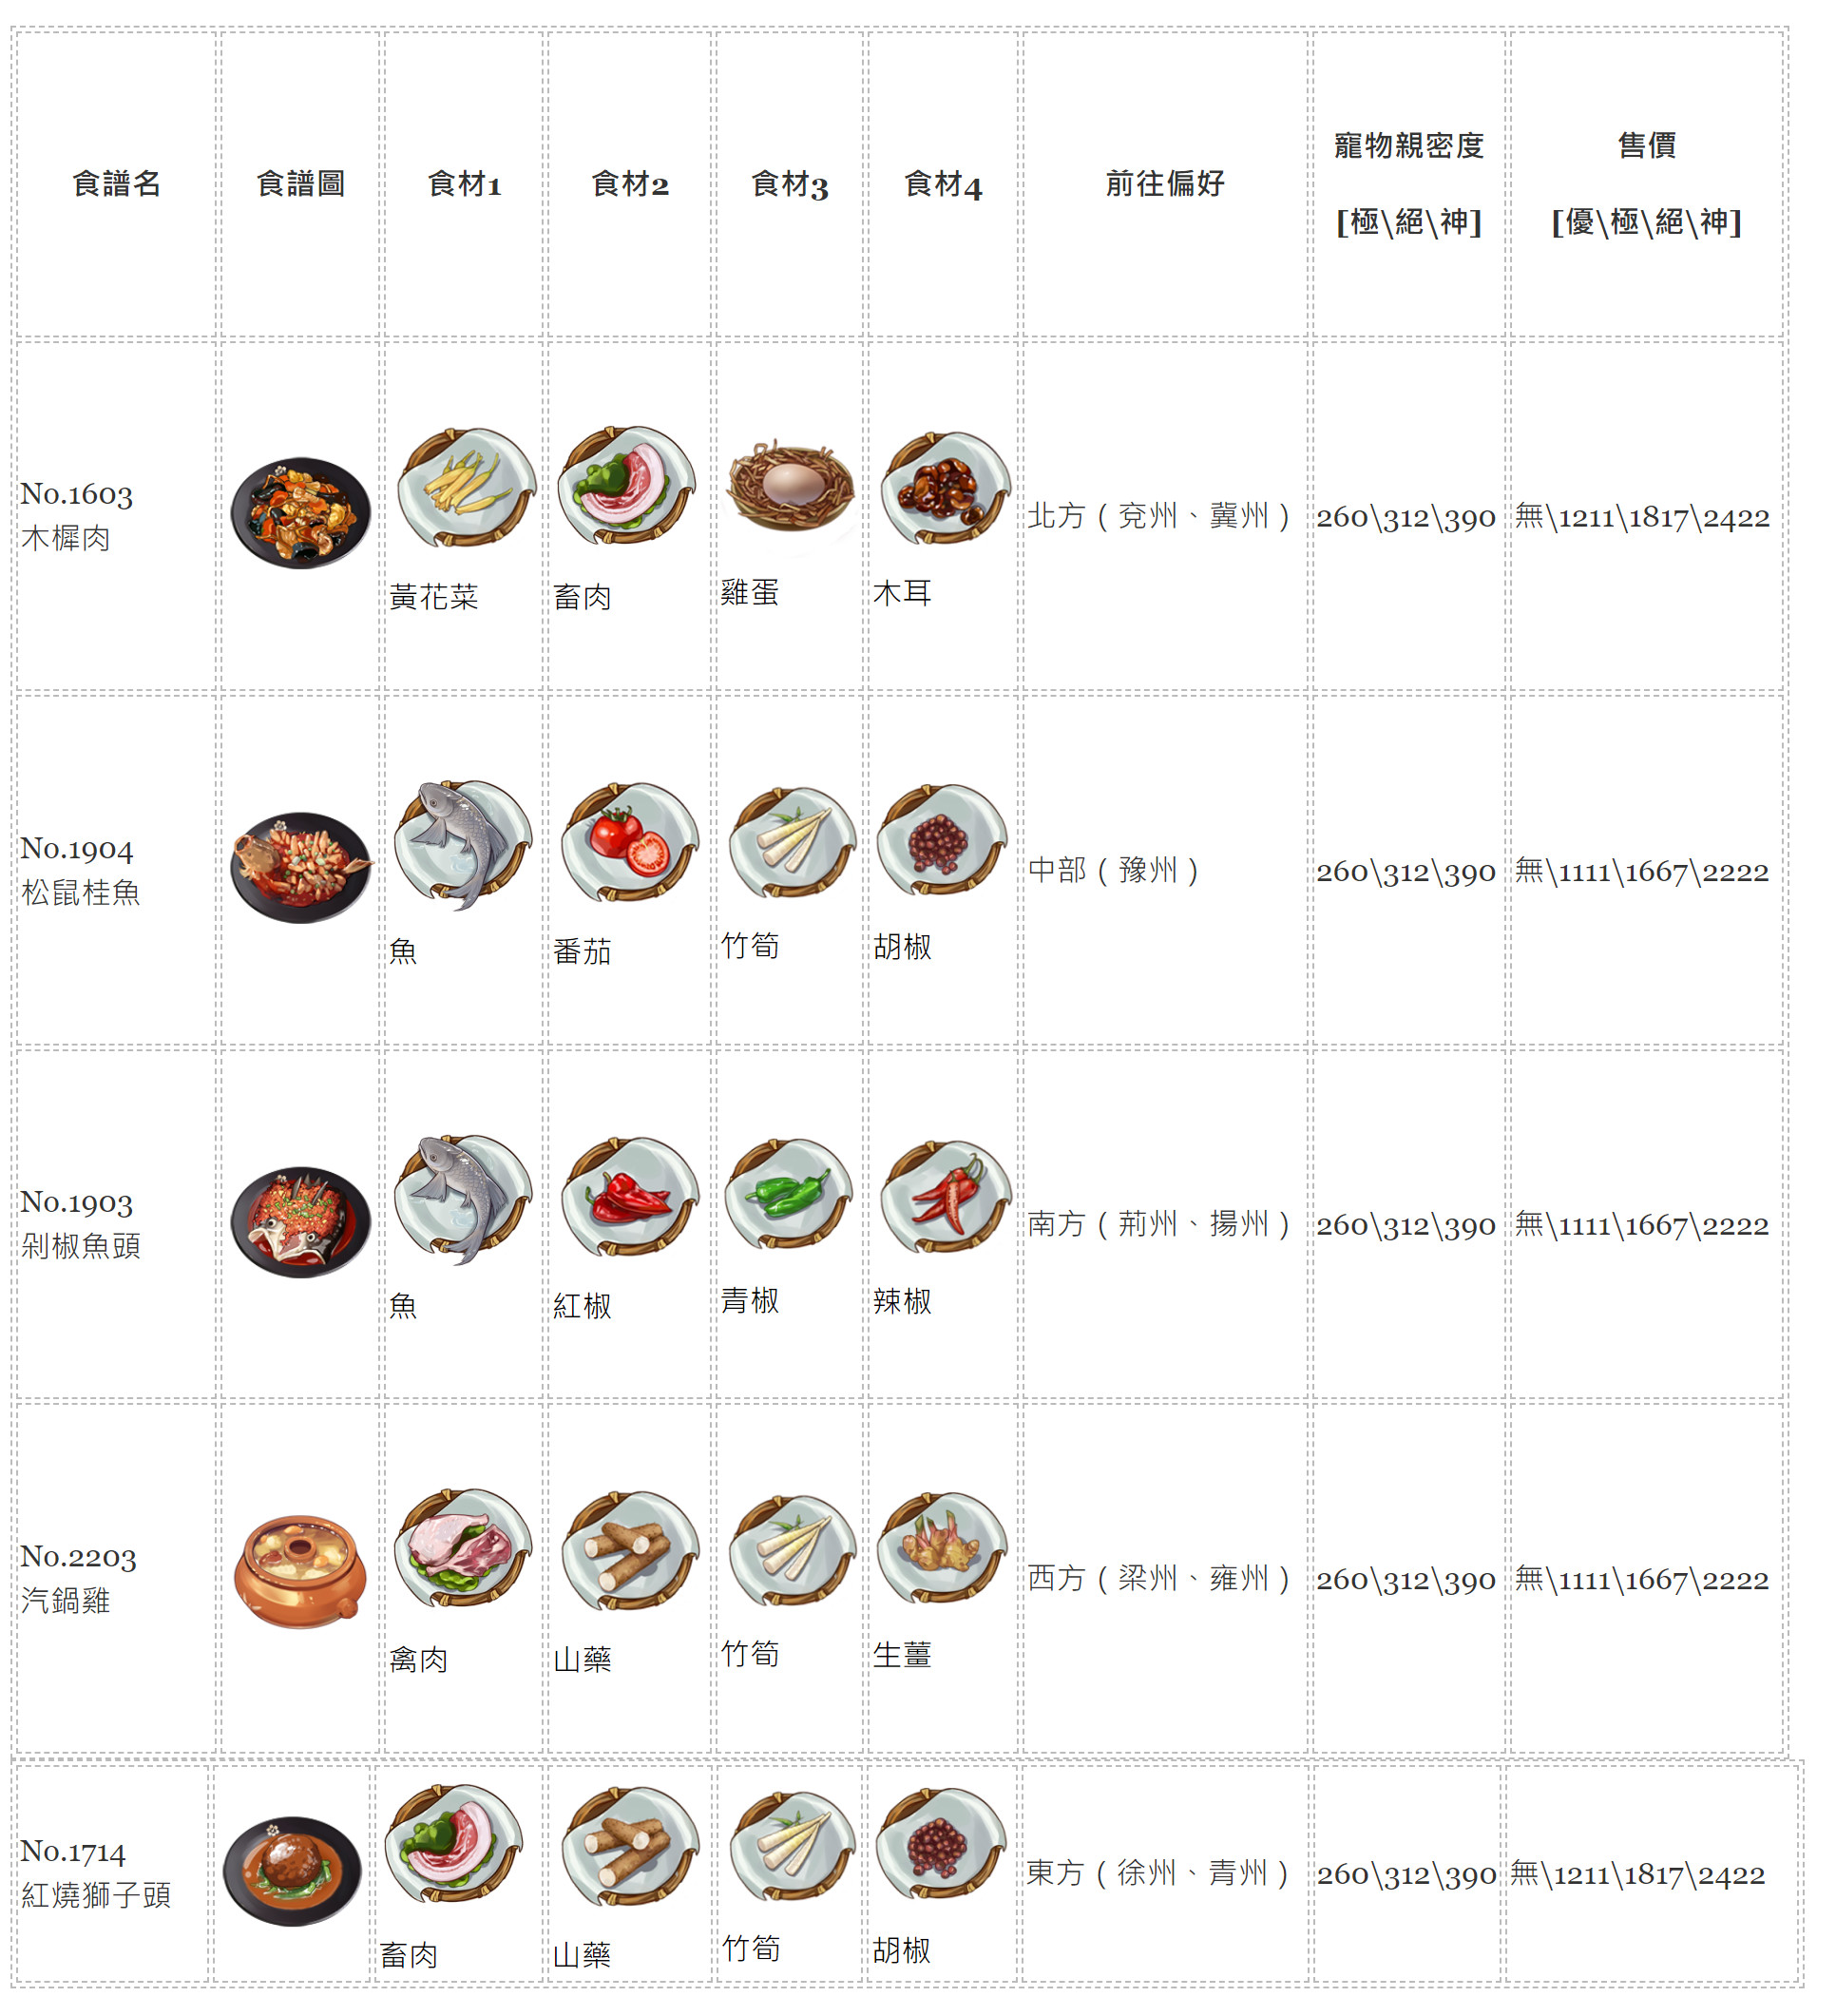 【江湖悠悠】料理食譜大全，1~11完美料理配方、普通食材食譜、旅行方向、寵物糧親密度、料理售價。 - 江湖悠悠料理 - 敗家達人推薦